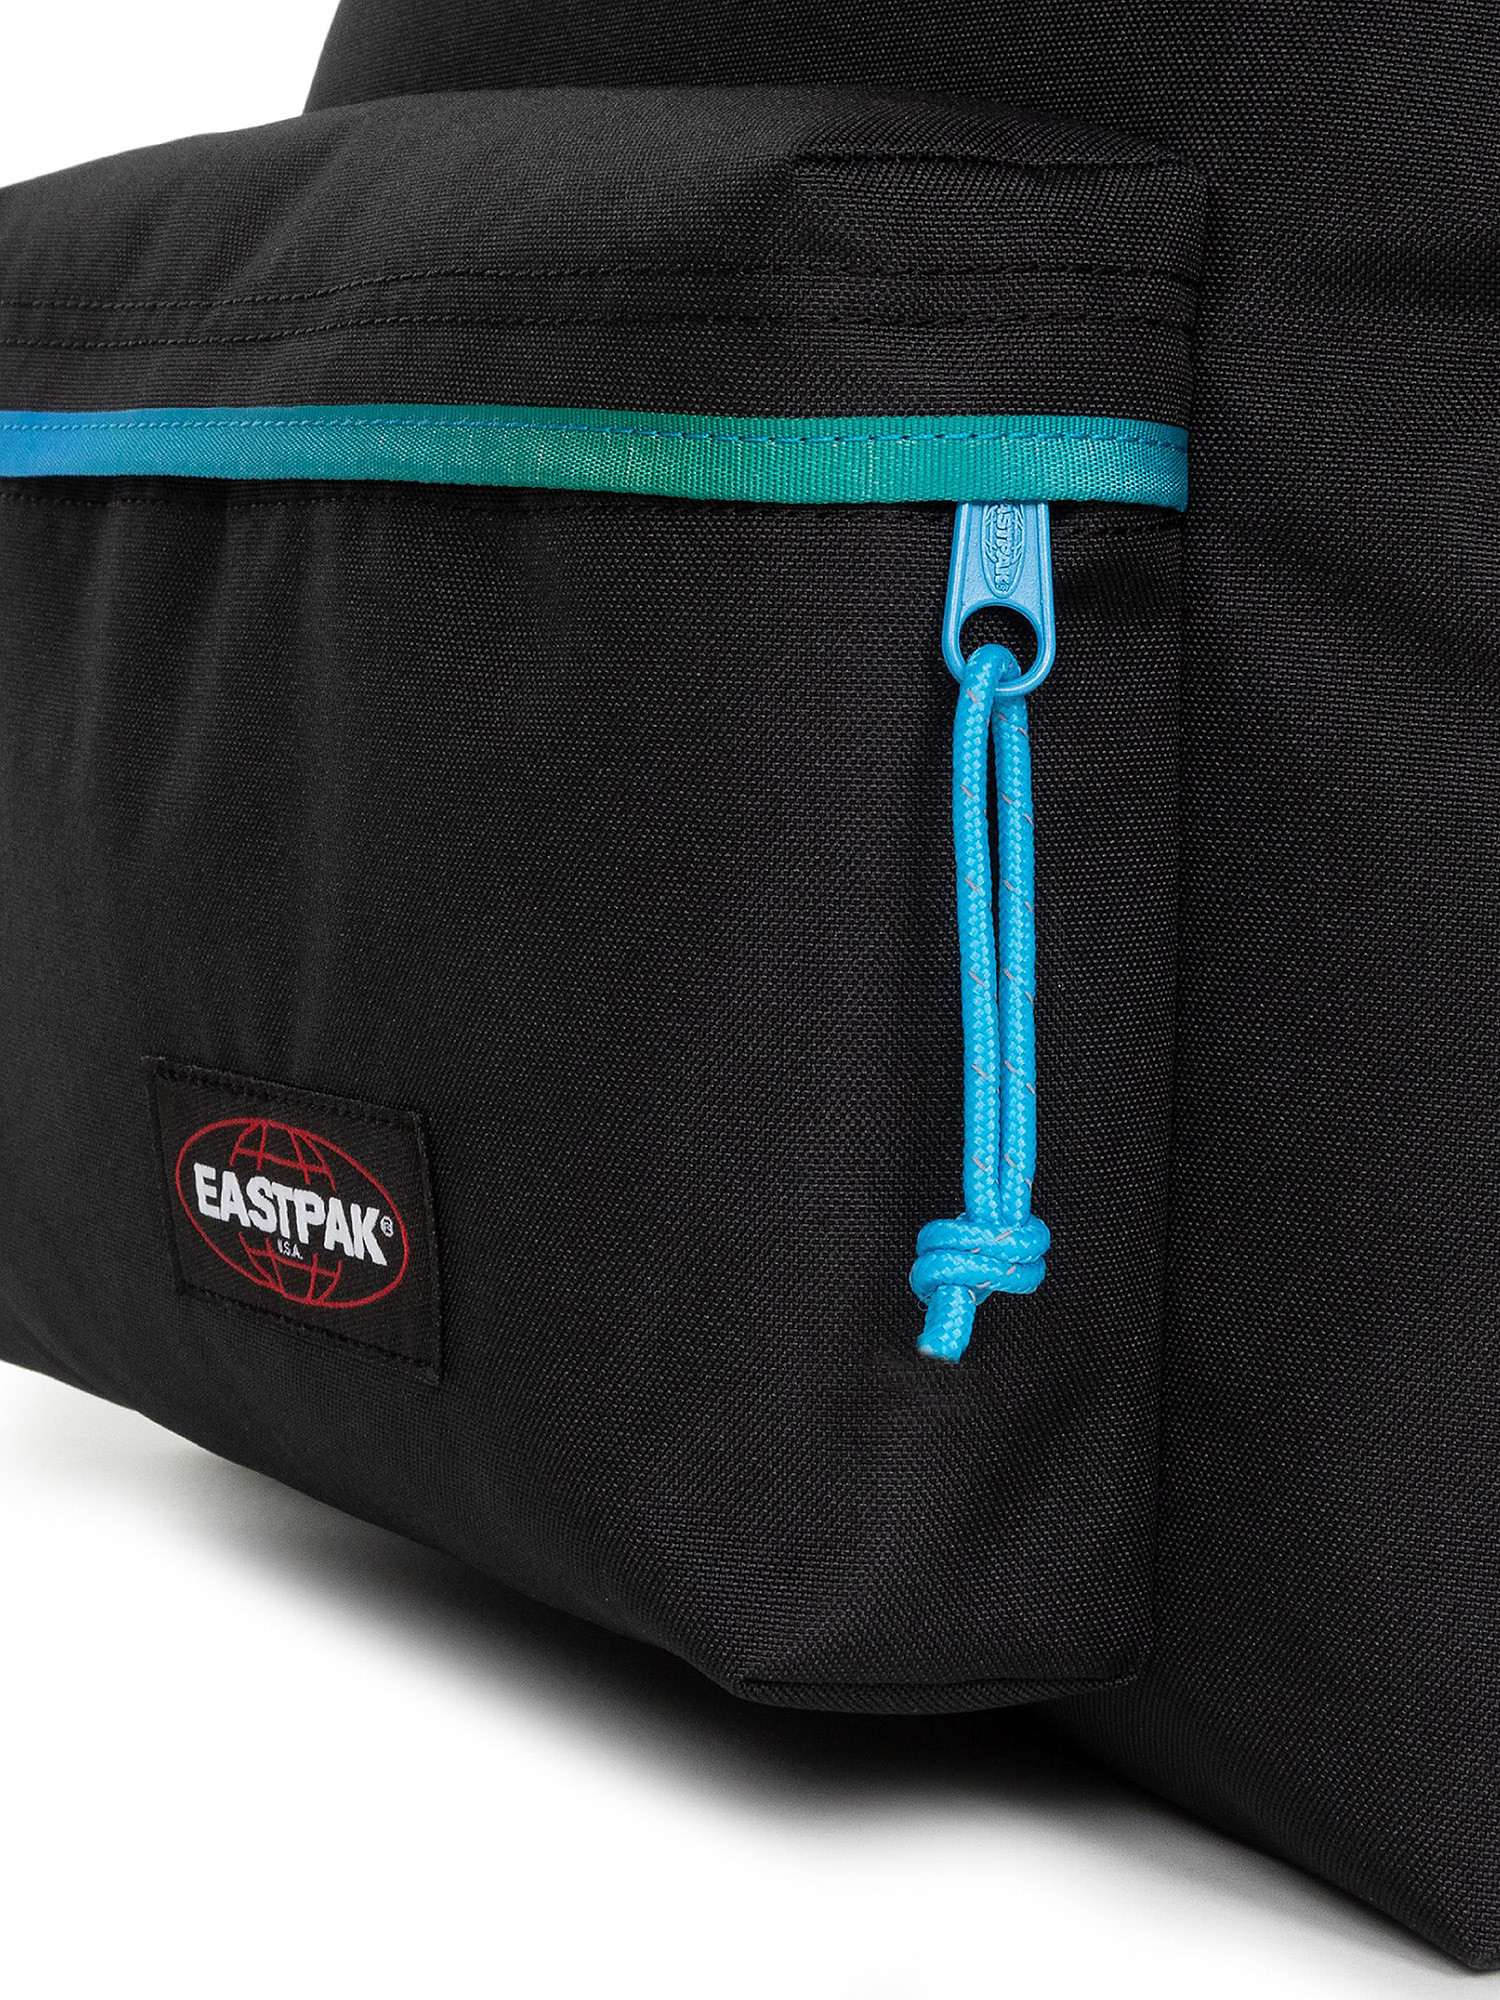 Eastpak - Padded Pak'r Backpack Contrastgrblue, Black, large image number 3